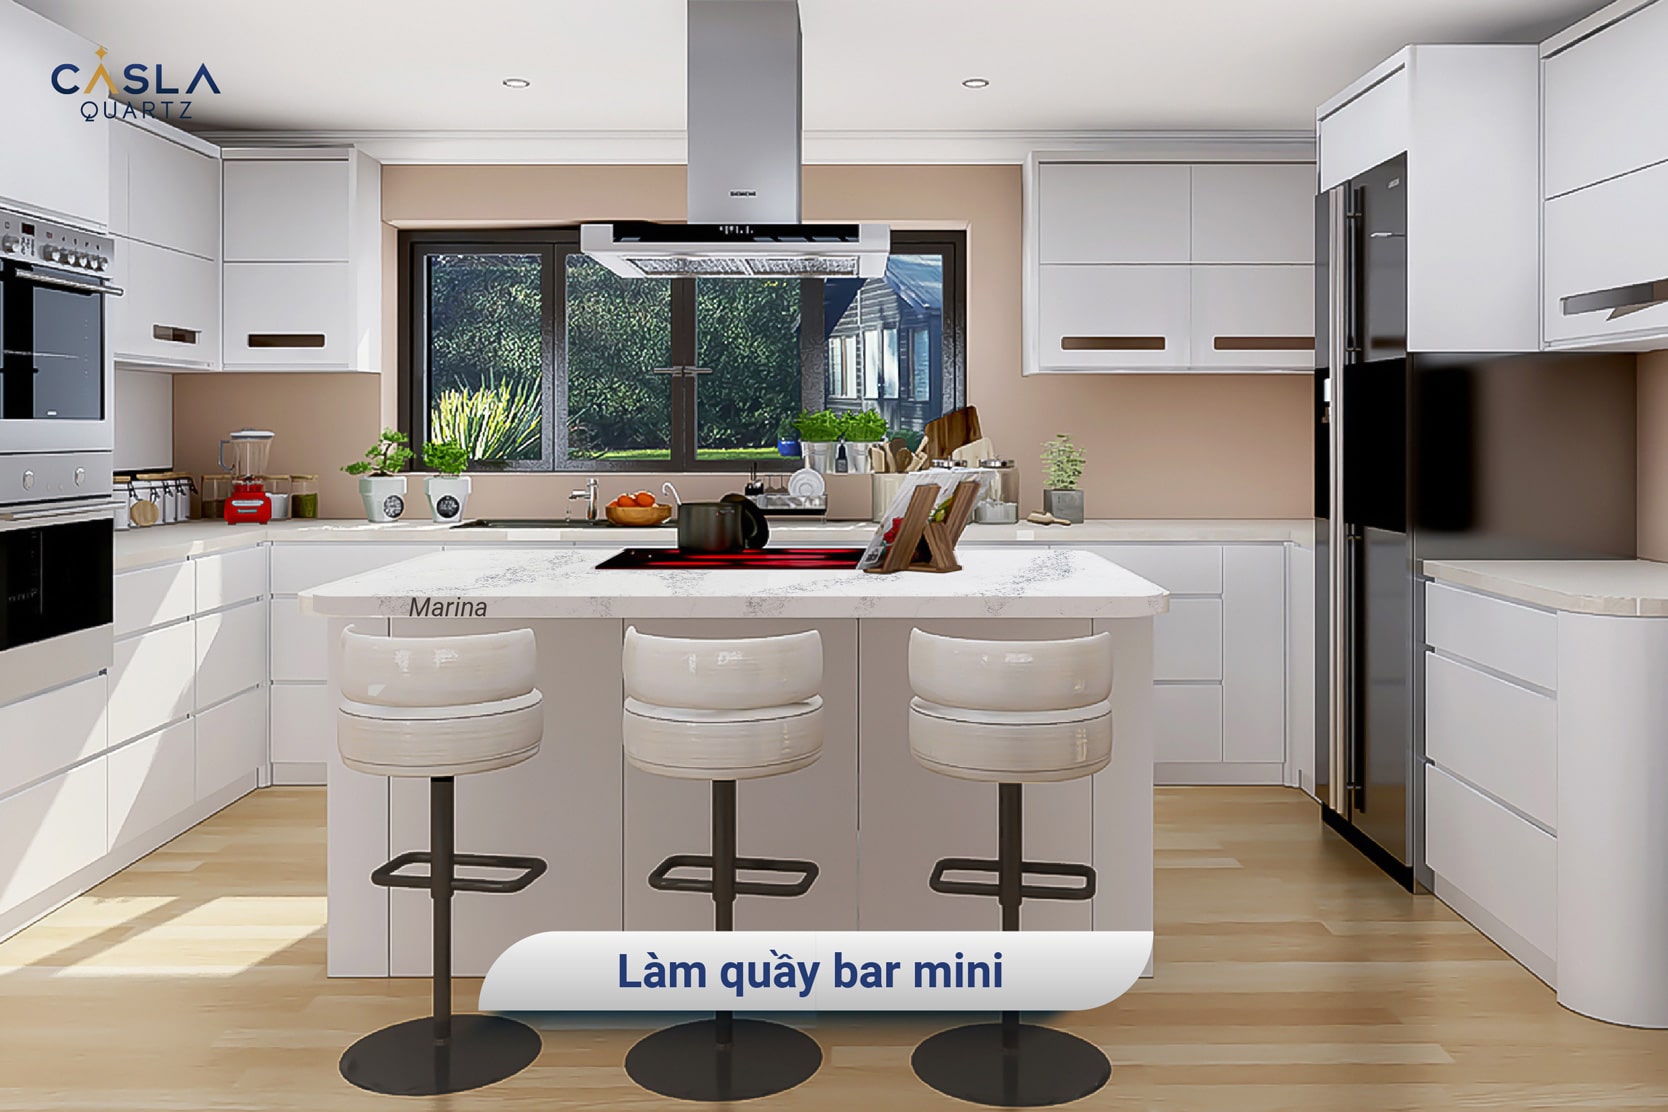 Mẹo thiết kế thông minh cho nhà bếp diện tích nhỏ: Quầy bar mini